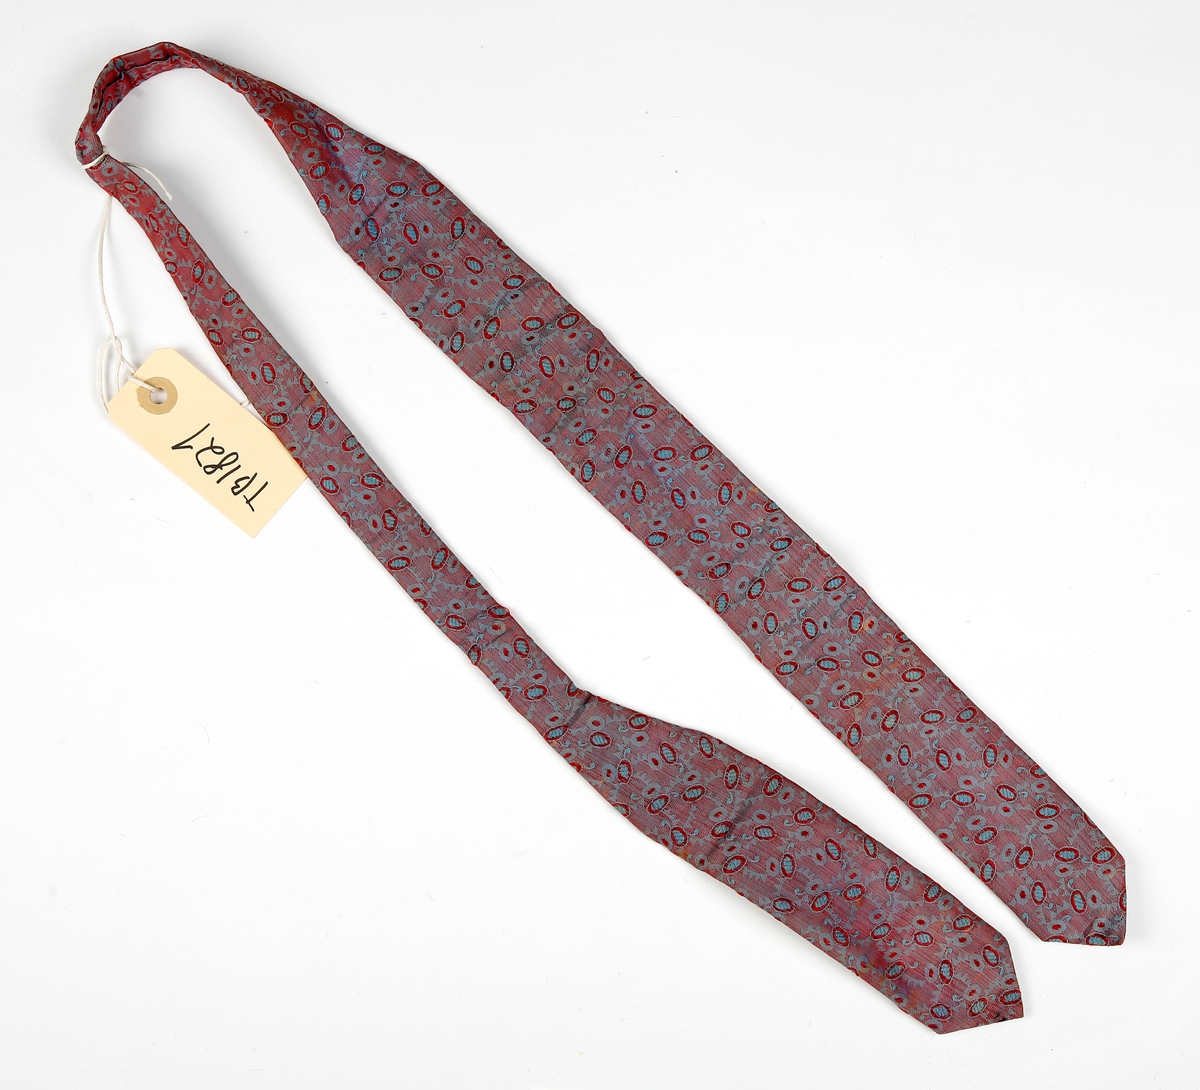 Mønstrete slips med brede stykker i hver ende, det ene lengre enn det andre. Spiss i begge ender. Fòret med annet stoff.